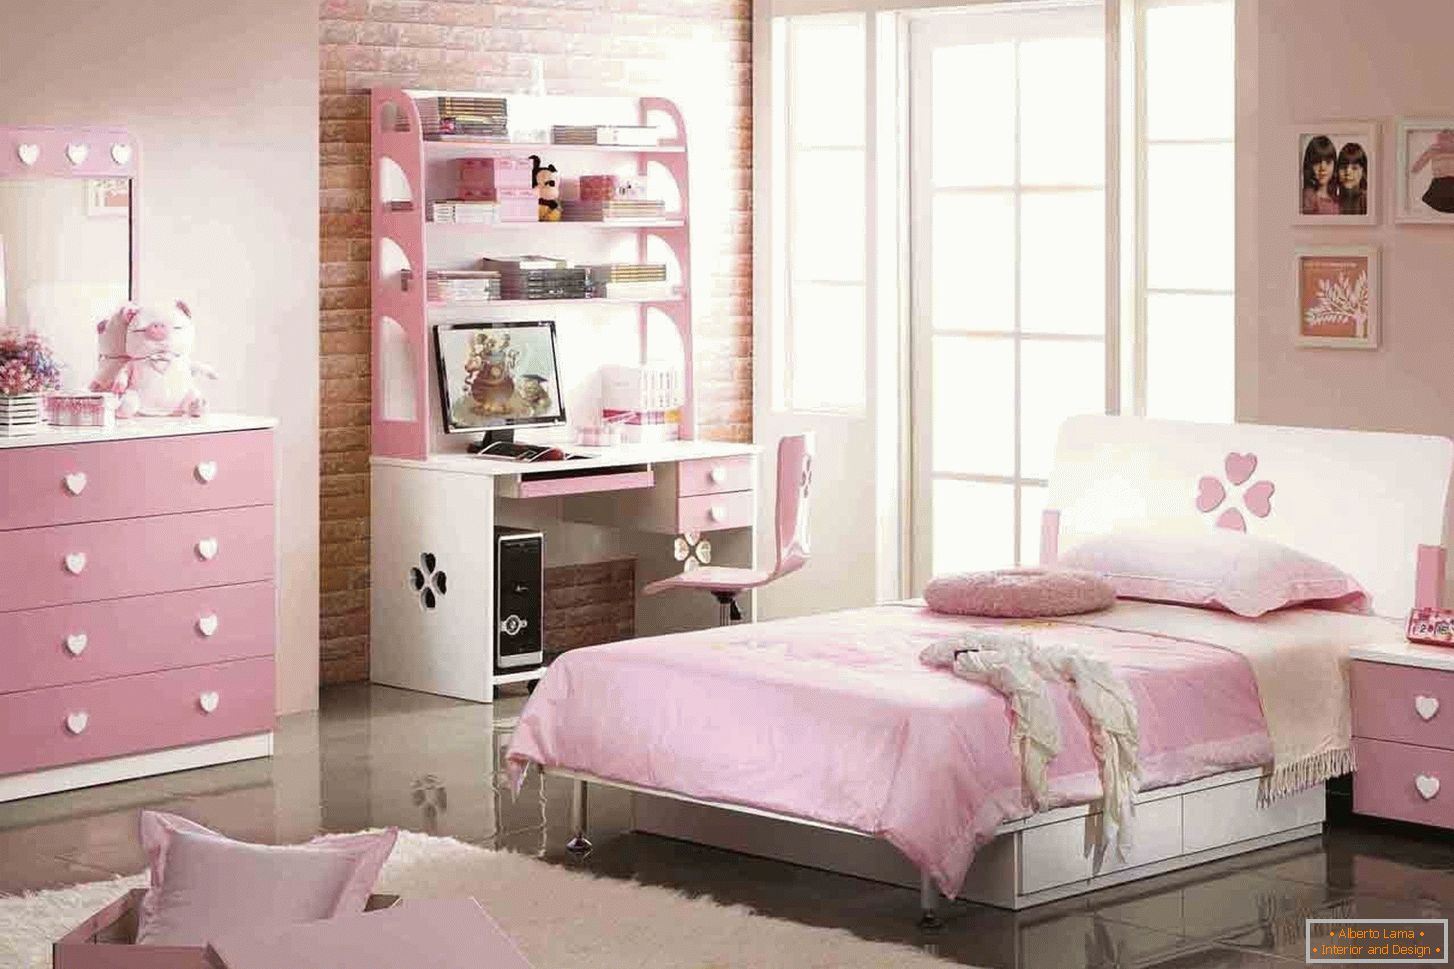 Návrh ložnice pro dospívající v růžové barvě